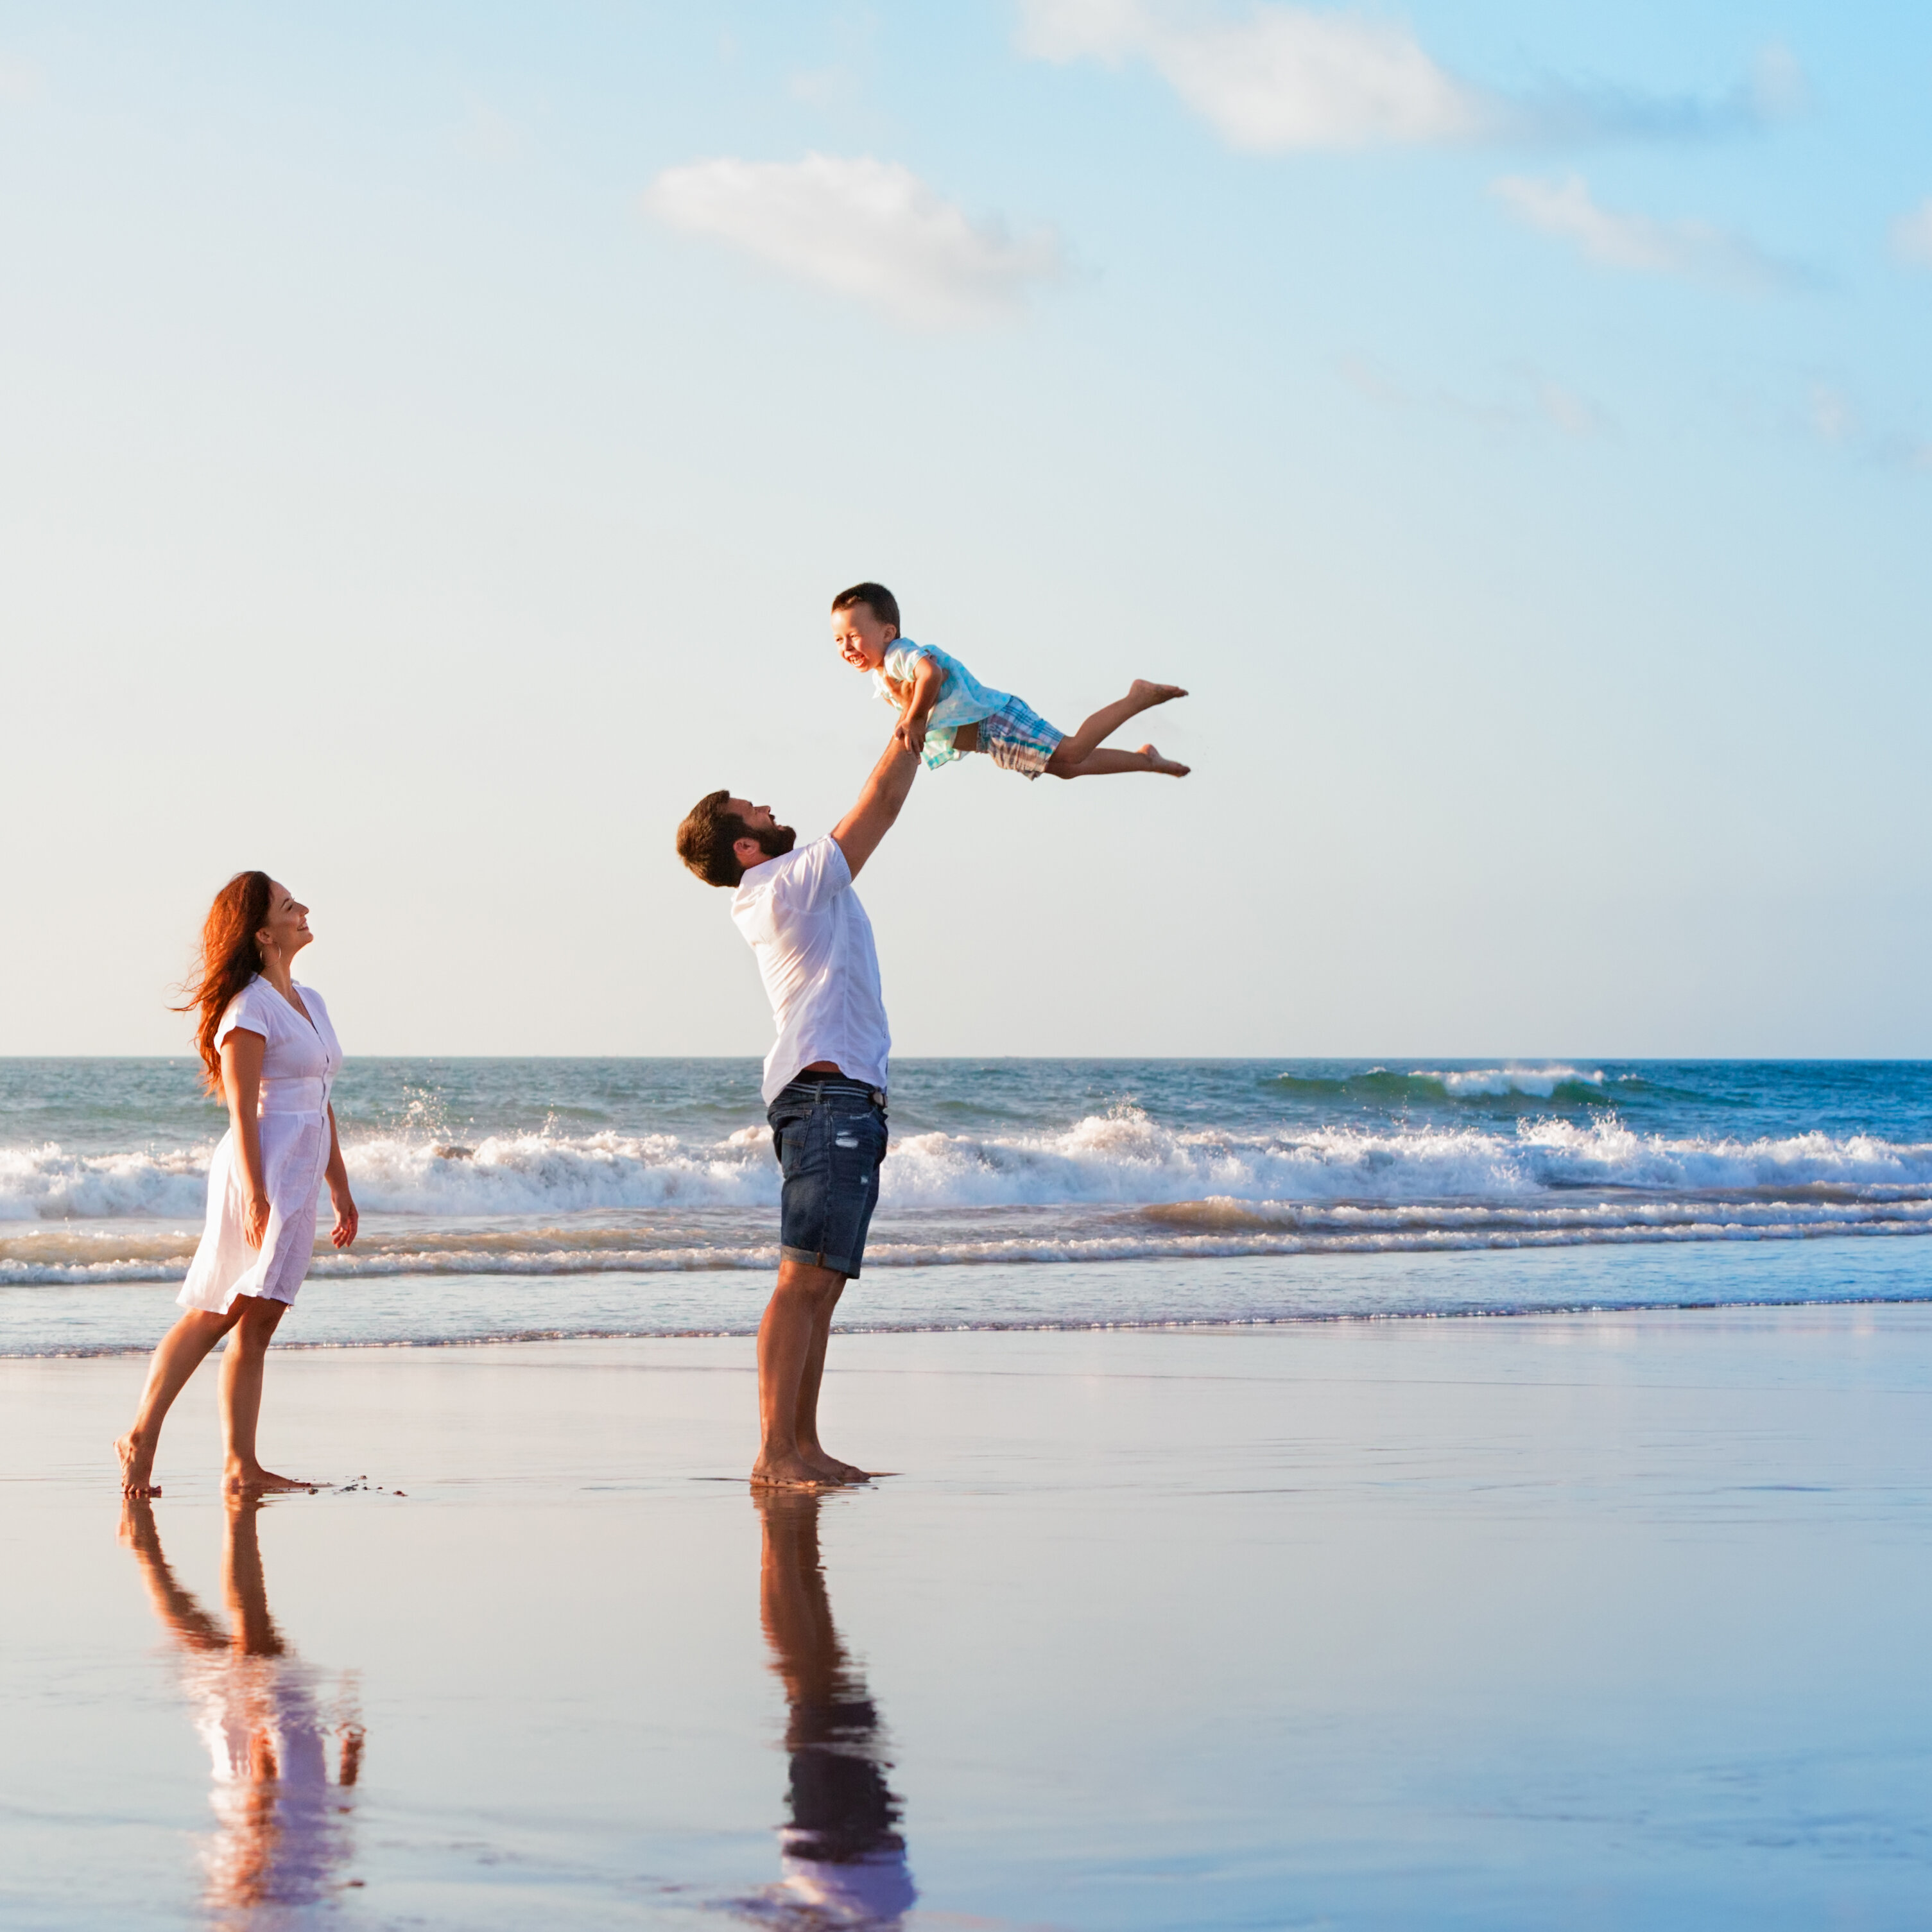 Familie am Strand - Welche Luft erfrischt dein Leben?